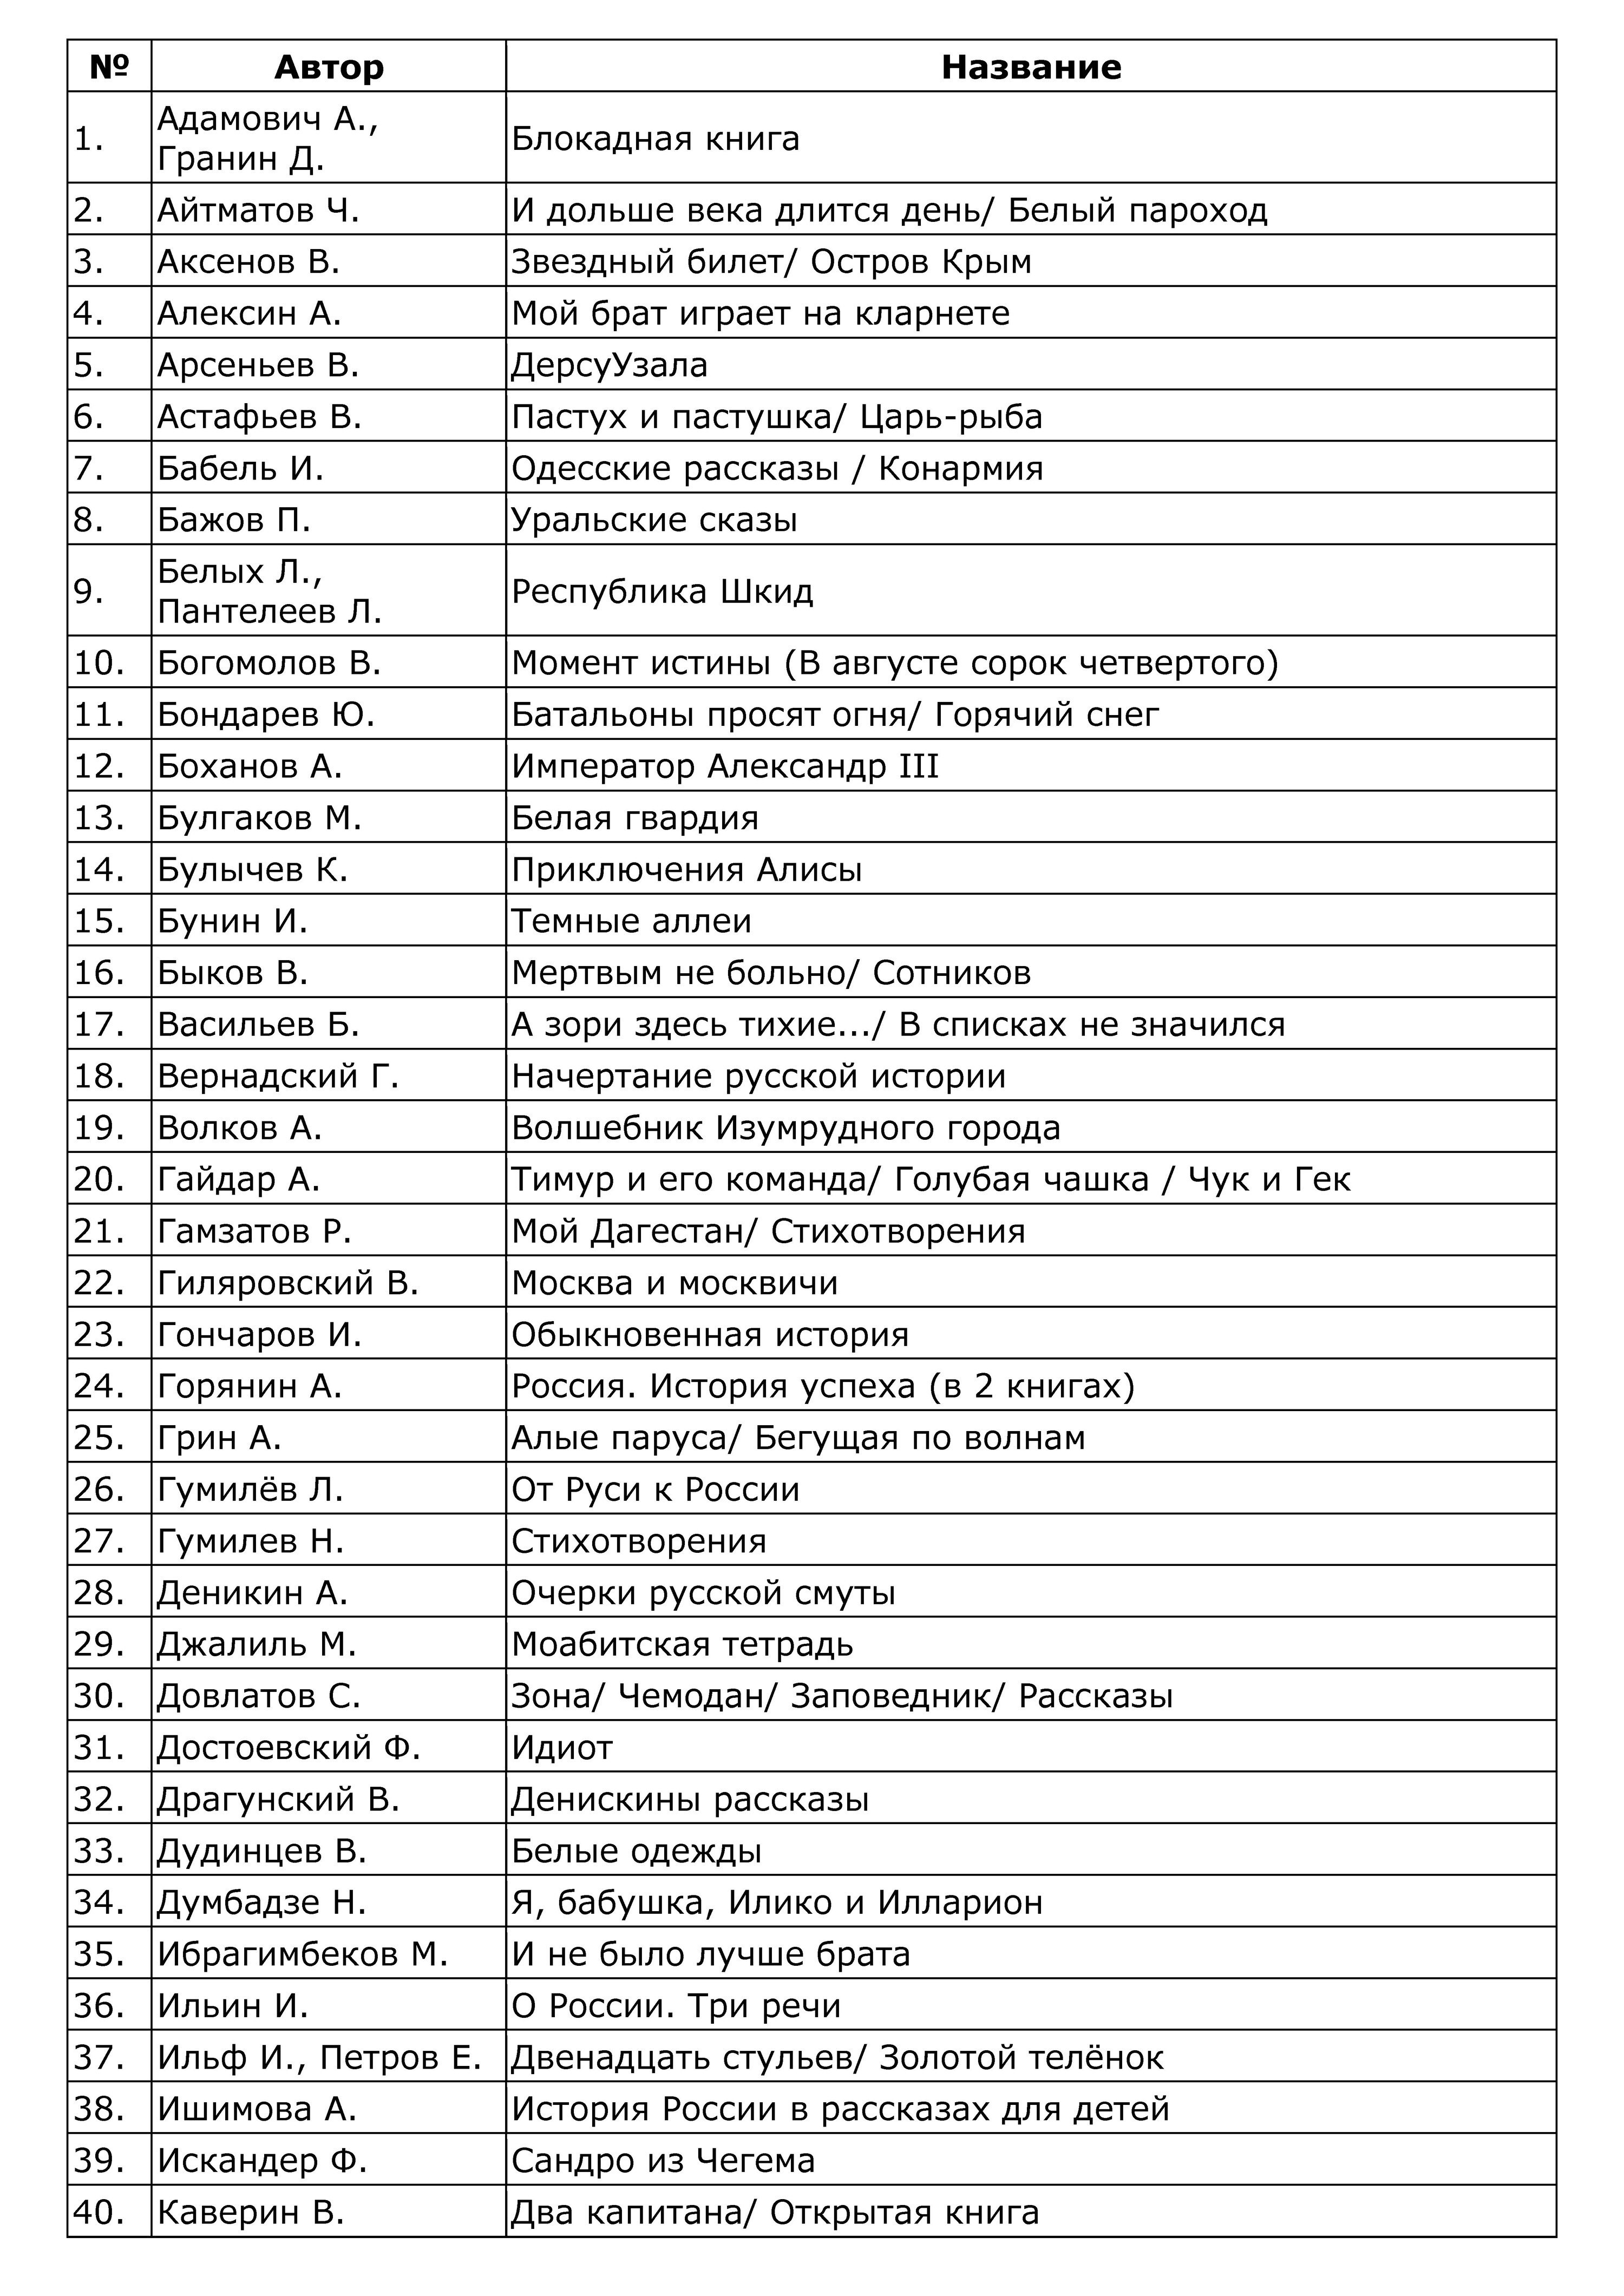 Список книг Путина